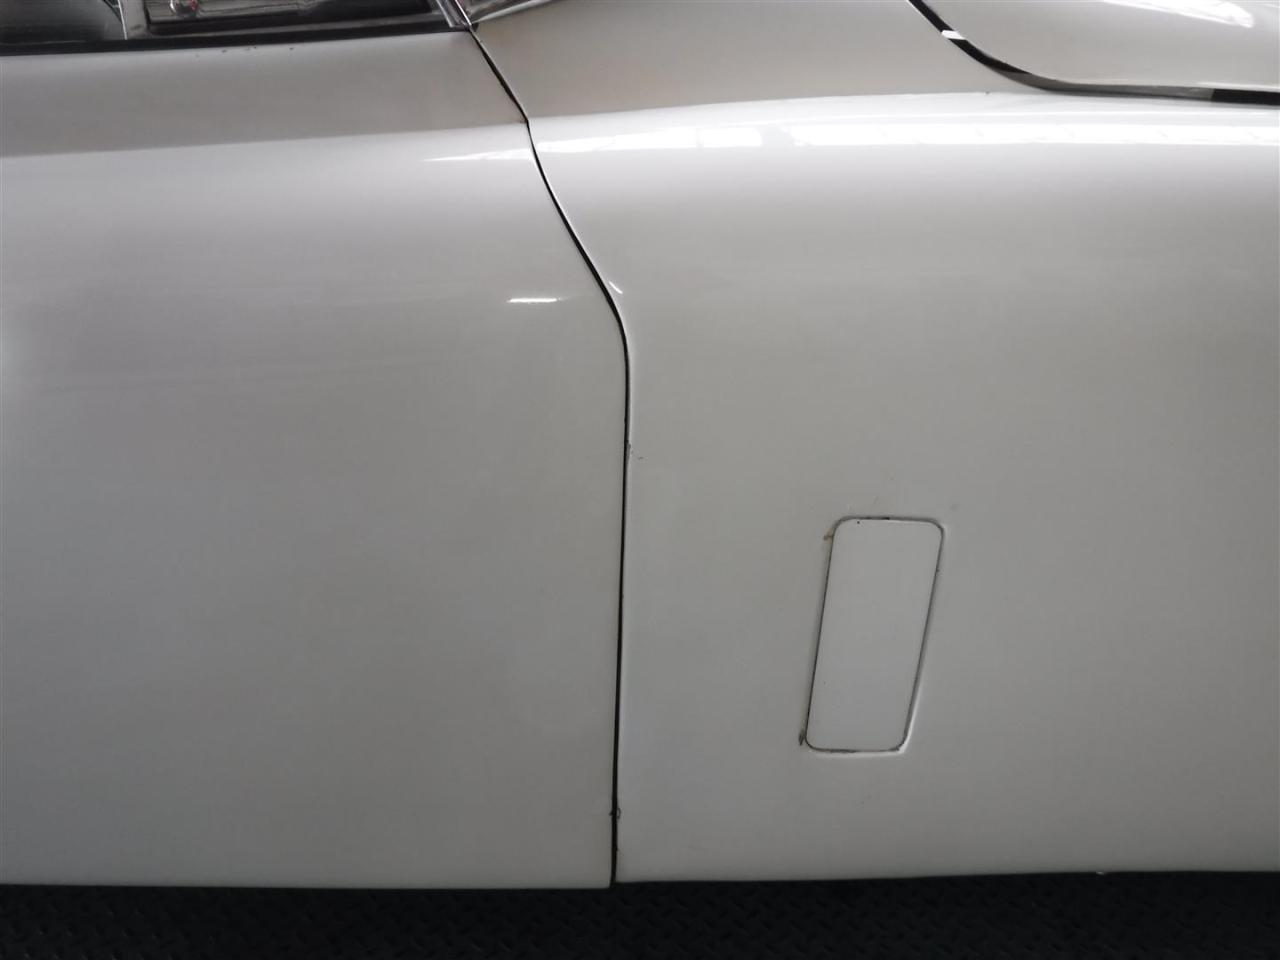 1958 Jaguar XK 150 Coupe white